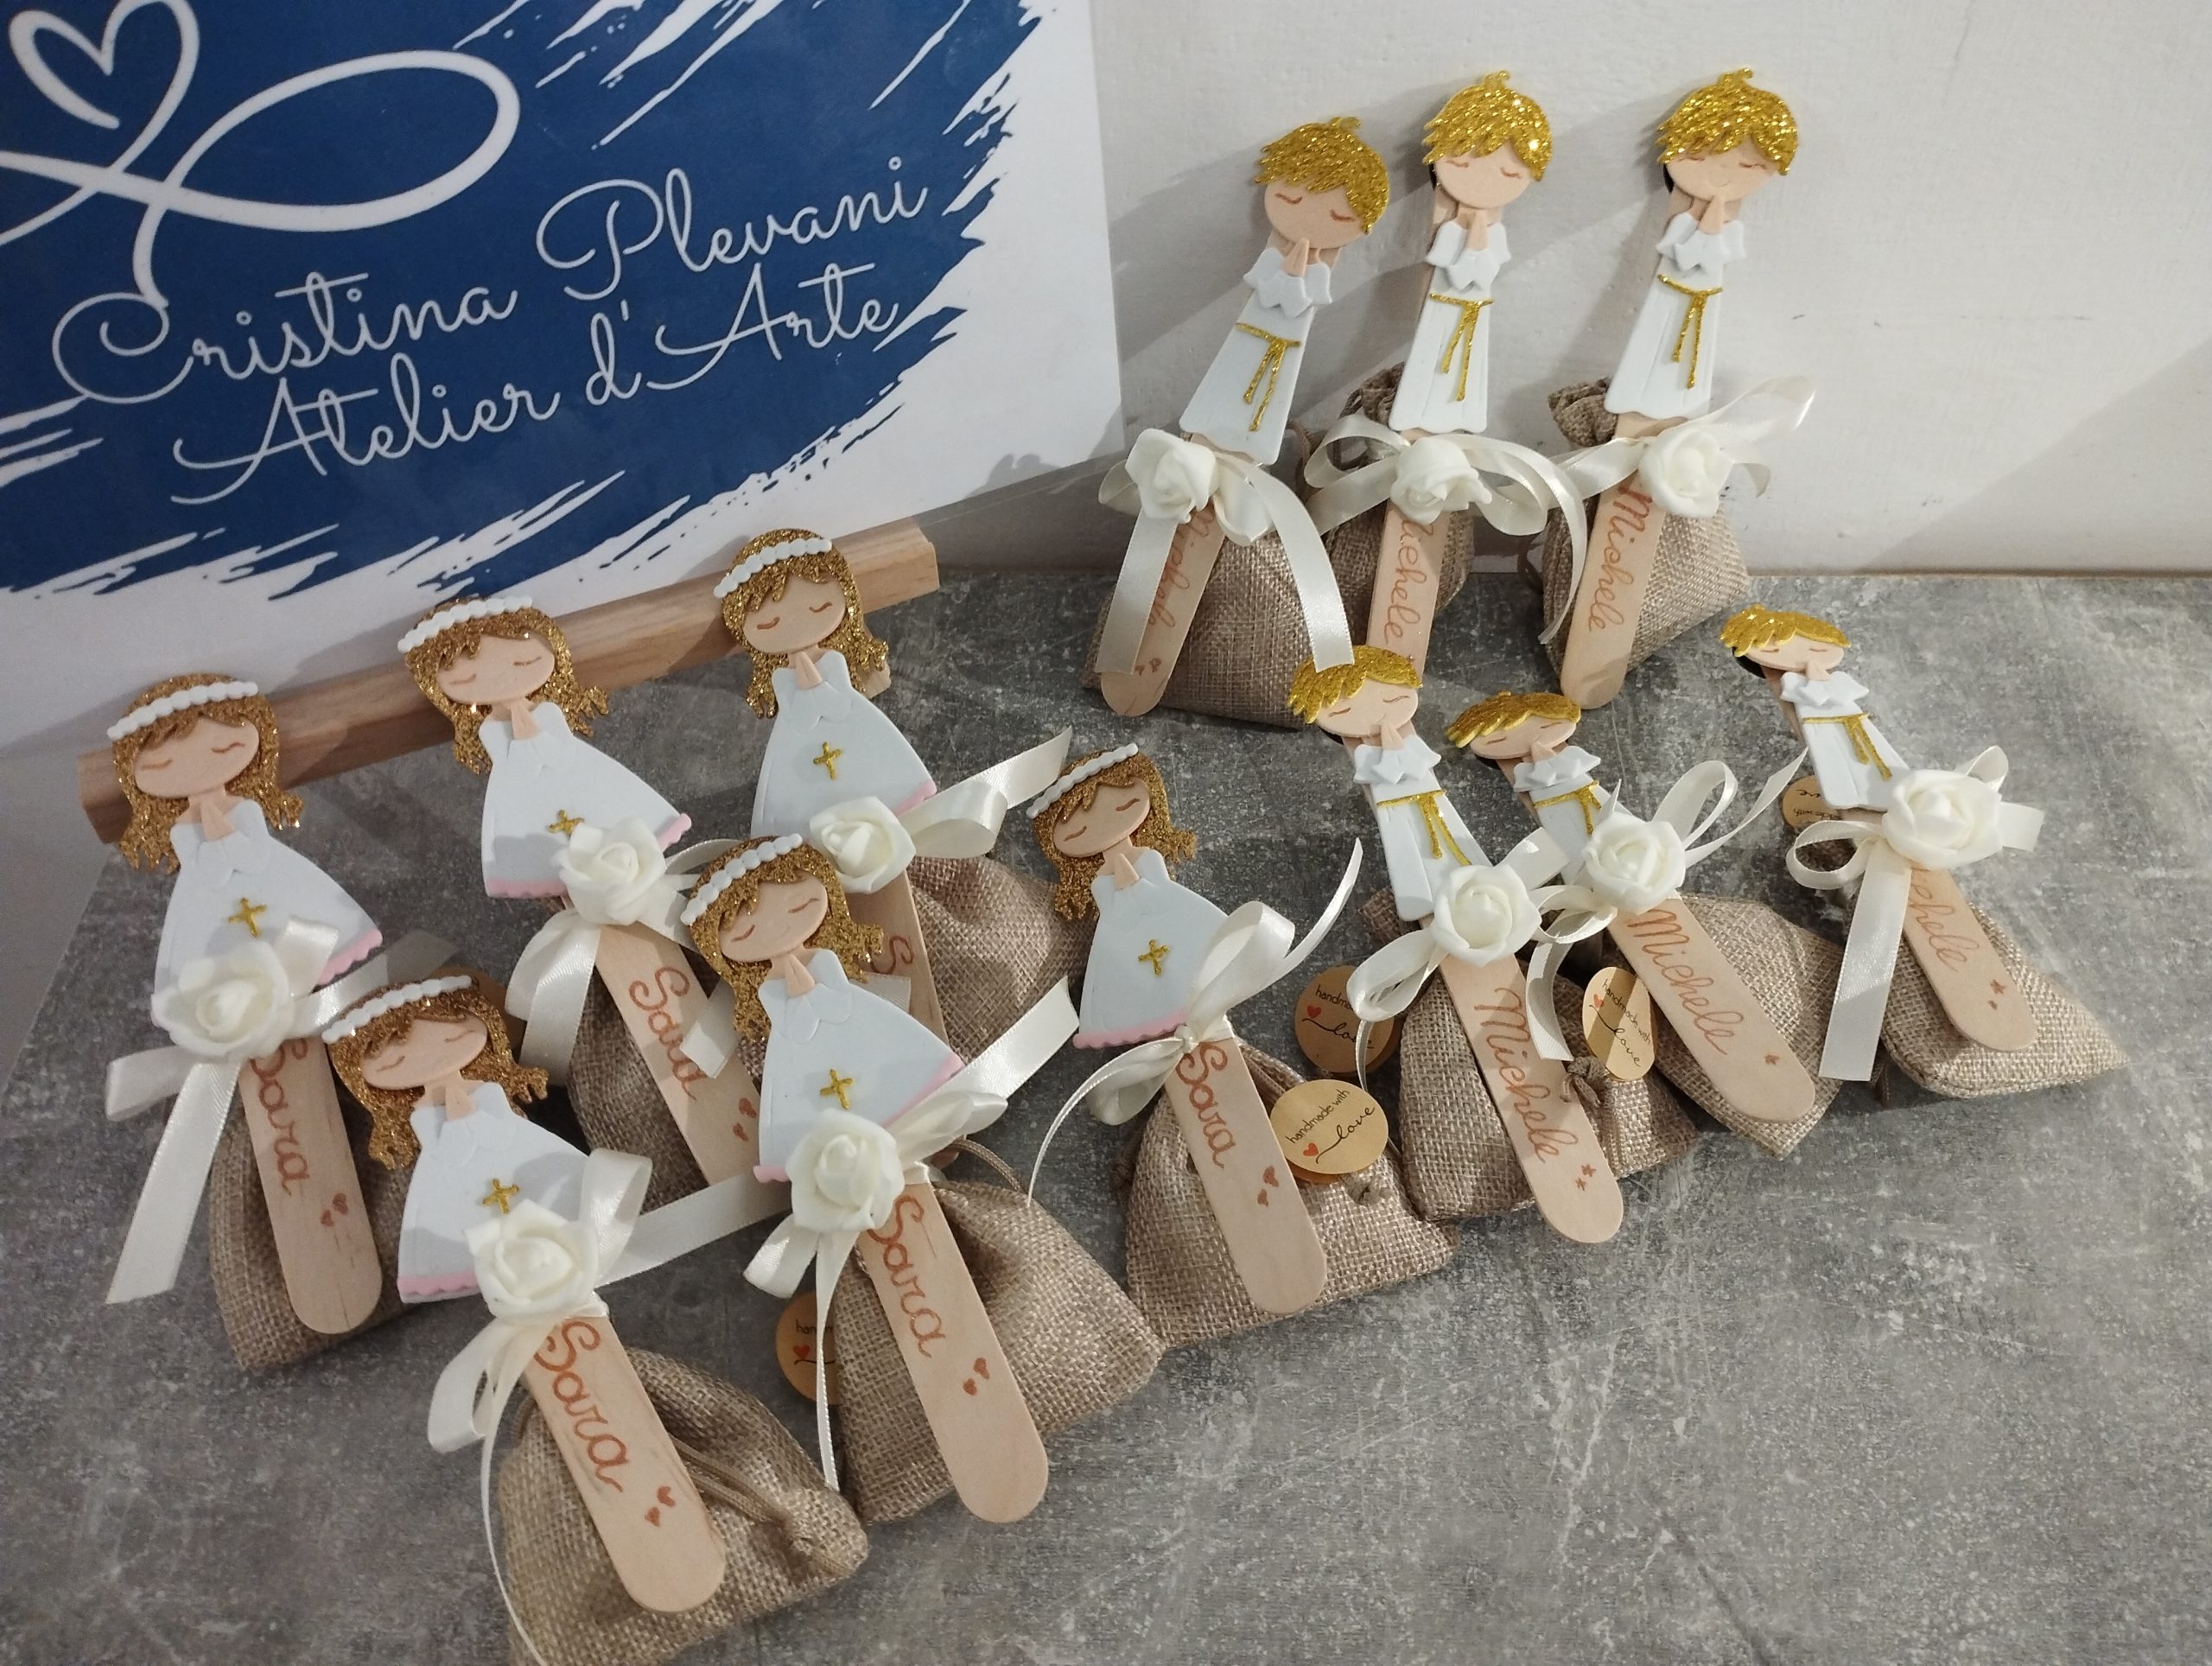 Bomboniere personalizzate con sacchetti in juta – Cristina Plevani –  Atelier d'Arte